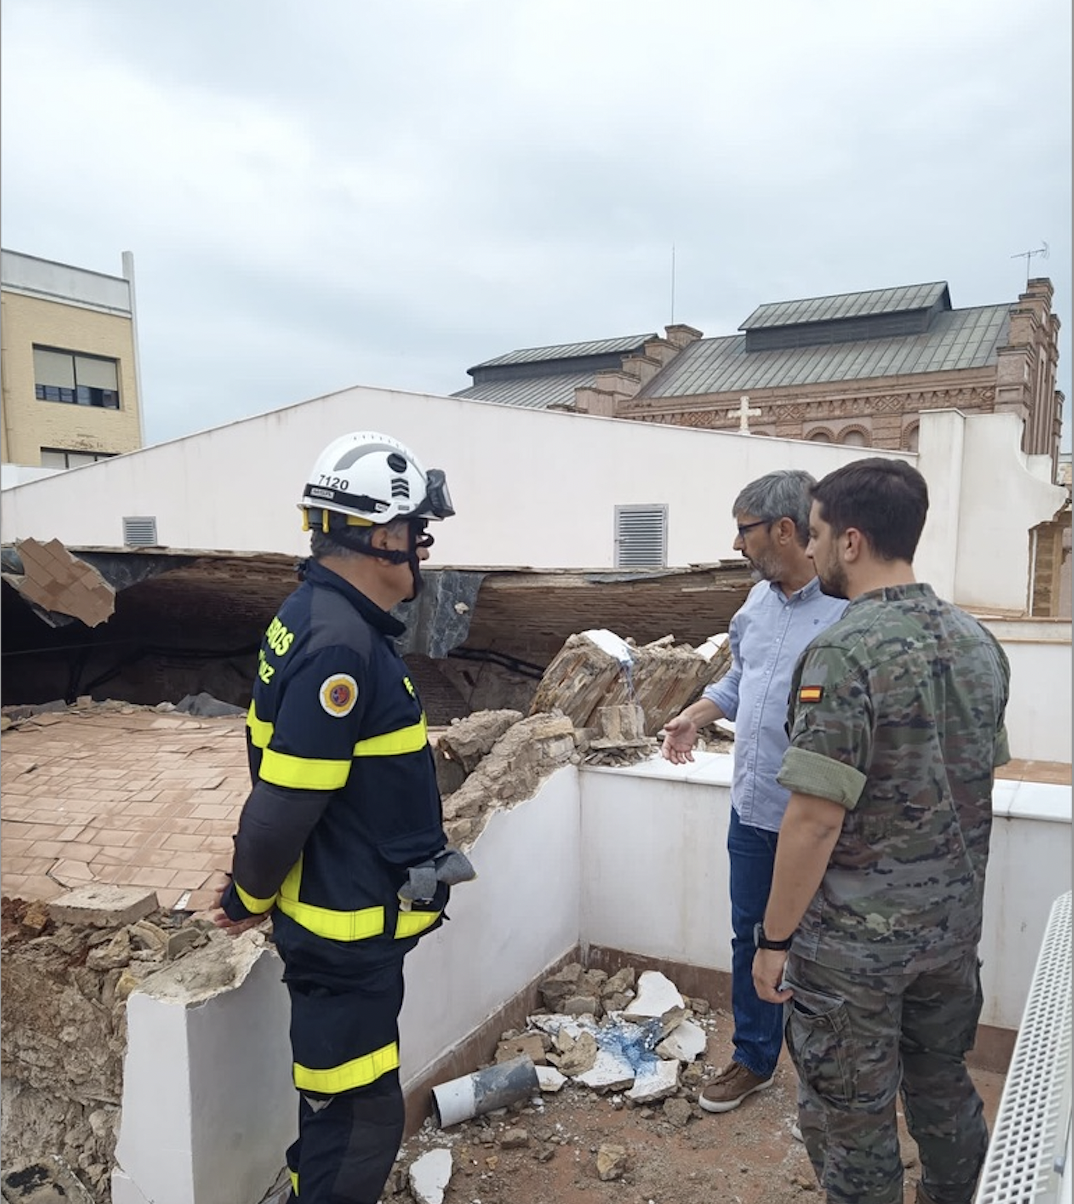 Técnicos de Defensa y del Ayuntamiento miento una a los bomberos en la inspección de la zona afectada.